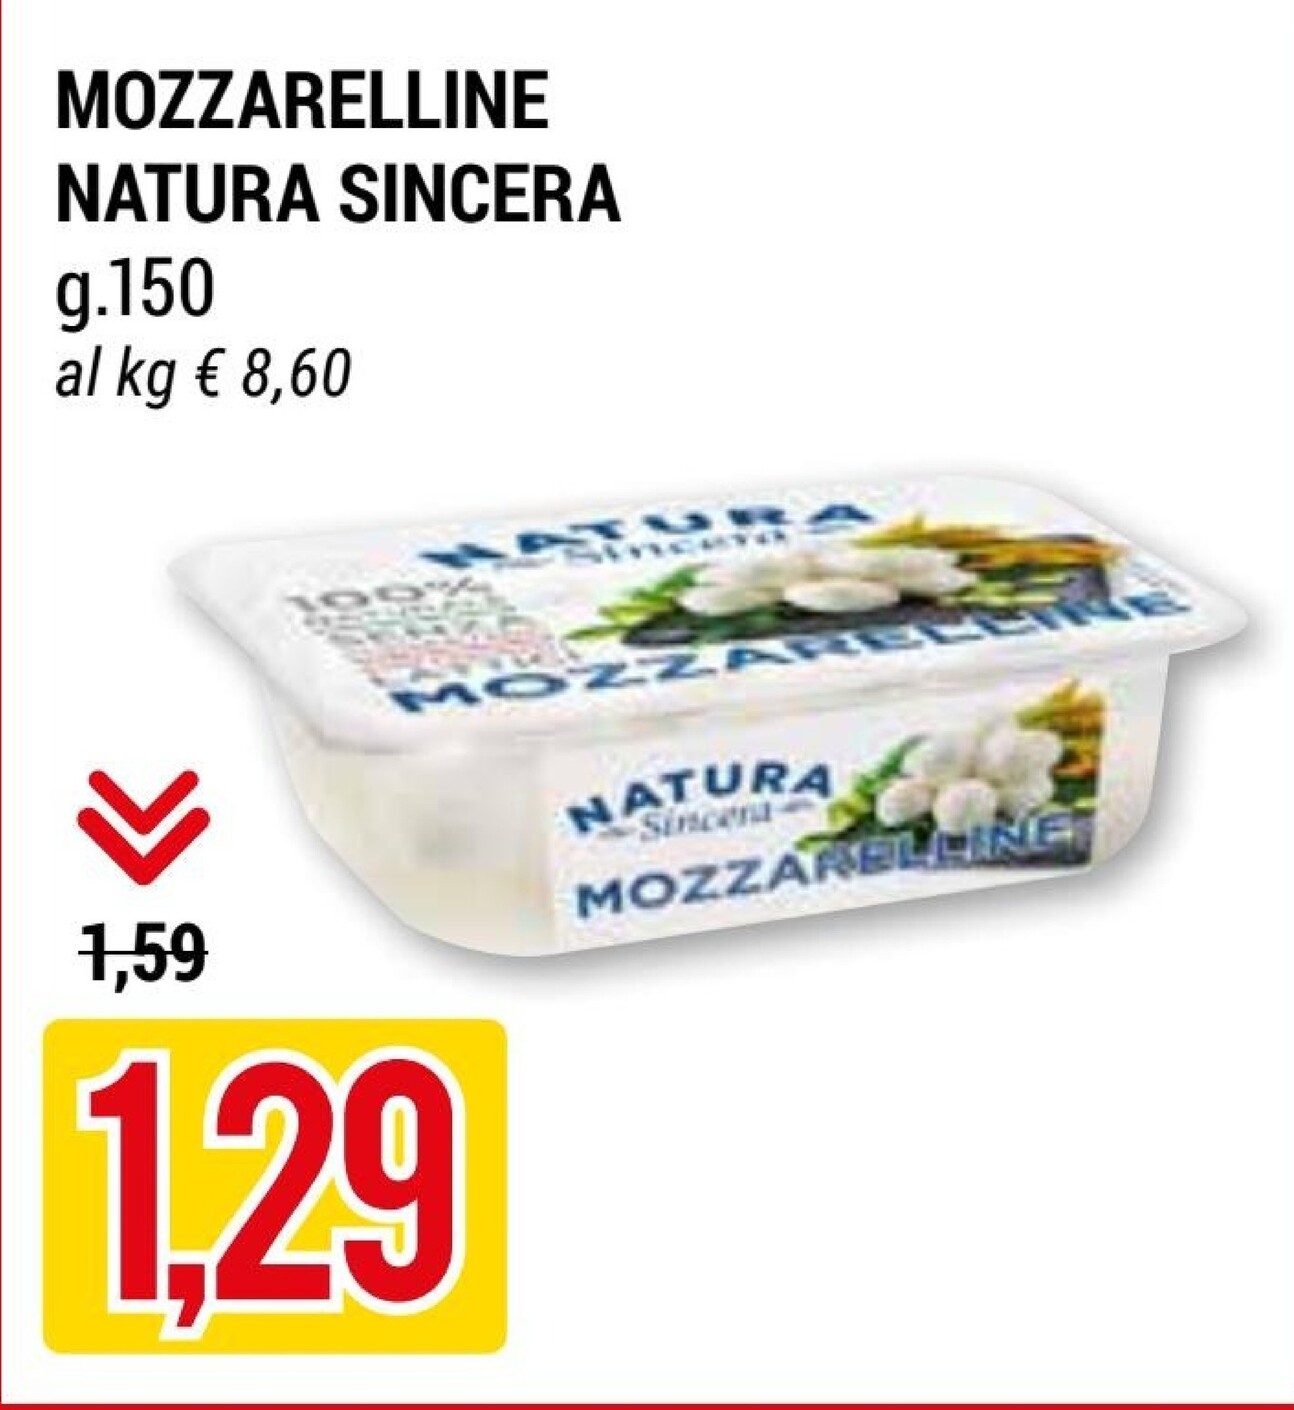 Offerta per Natura sincera Mozzarelline a 1,29€ in Hardis